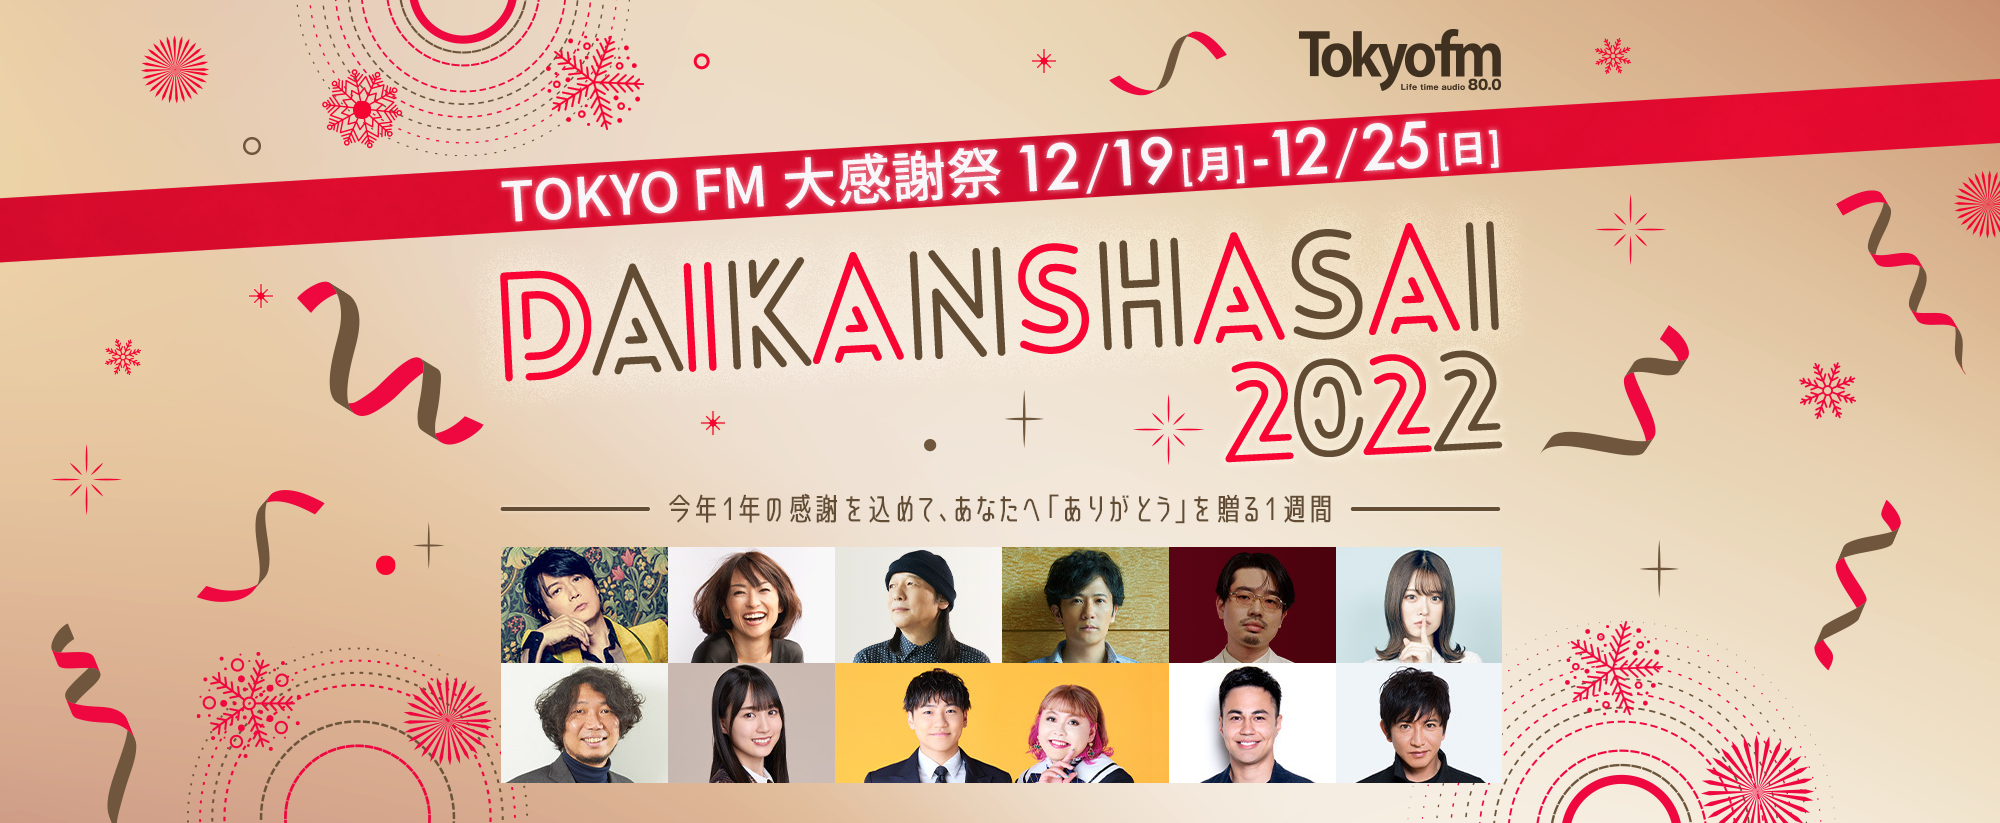 TOKYO FM DAIKANSHASAI 2022 2022.12.19 Mon. - 12.25 Fri.